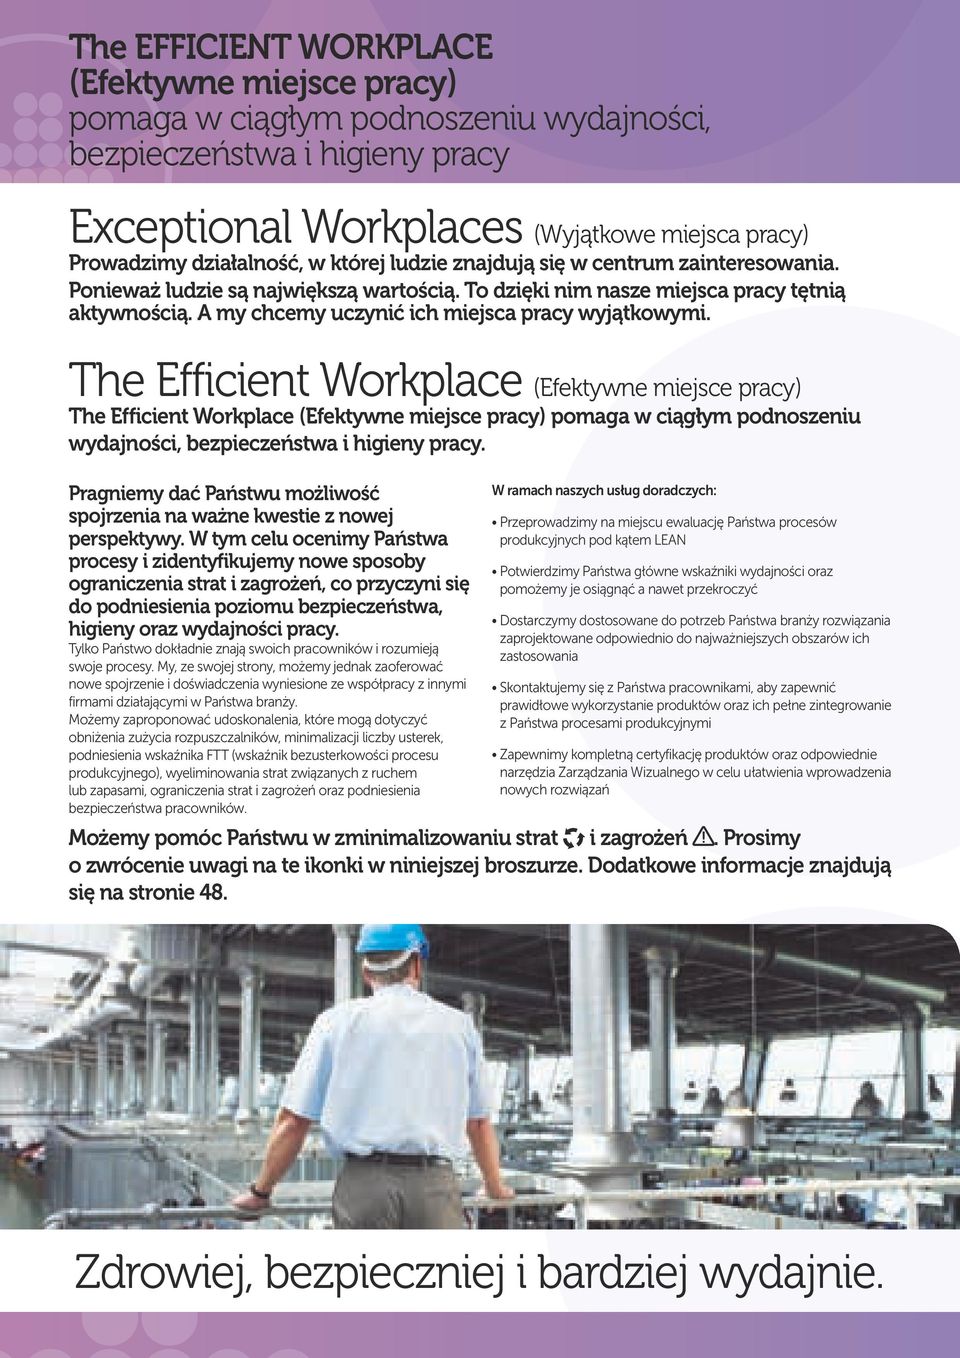 The Efficient Workplace (Efektywne miejsce pracy) The Efficient Workplace (Efektywne miejsce pracy) pomaga w ciągłym podnoszeniu wydajności, bezpieczeństwa i higieny pracy.